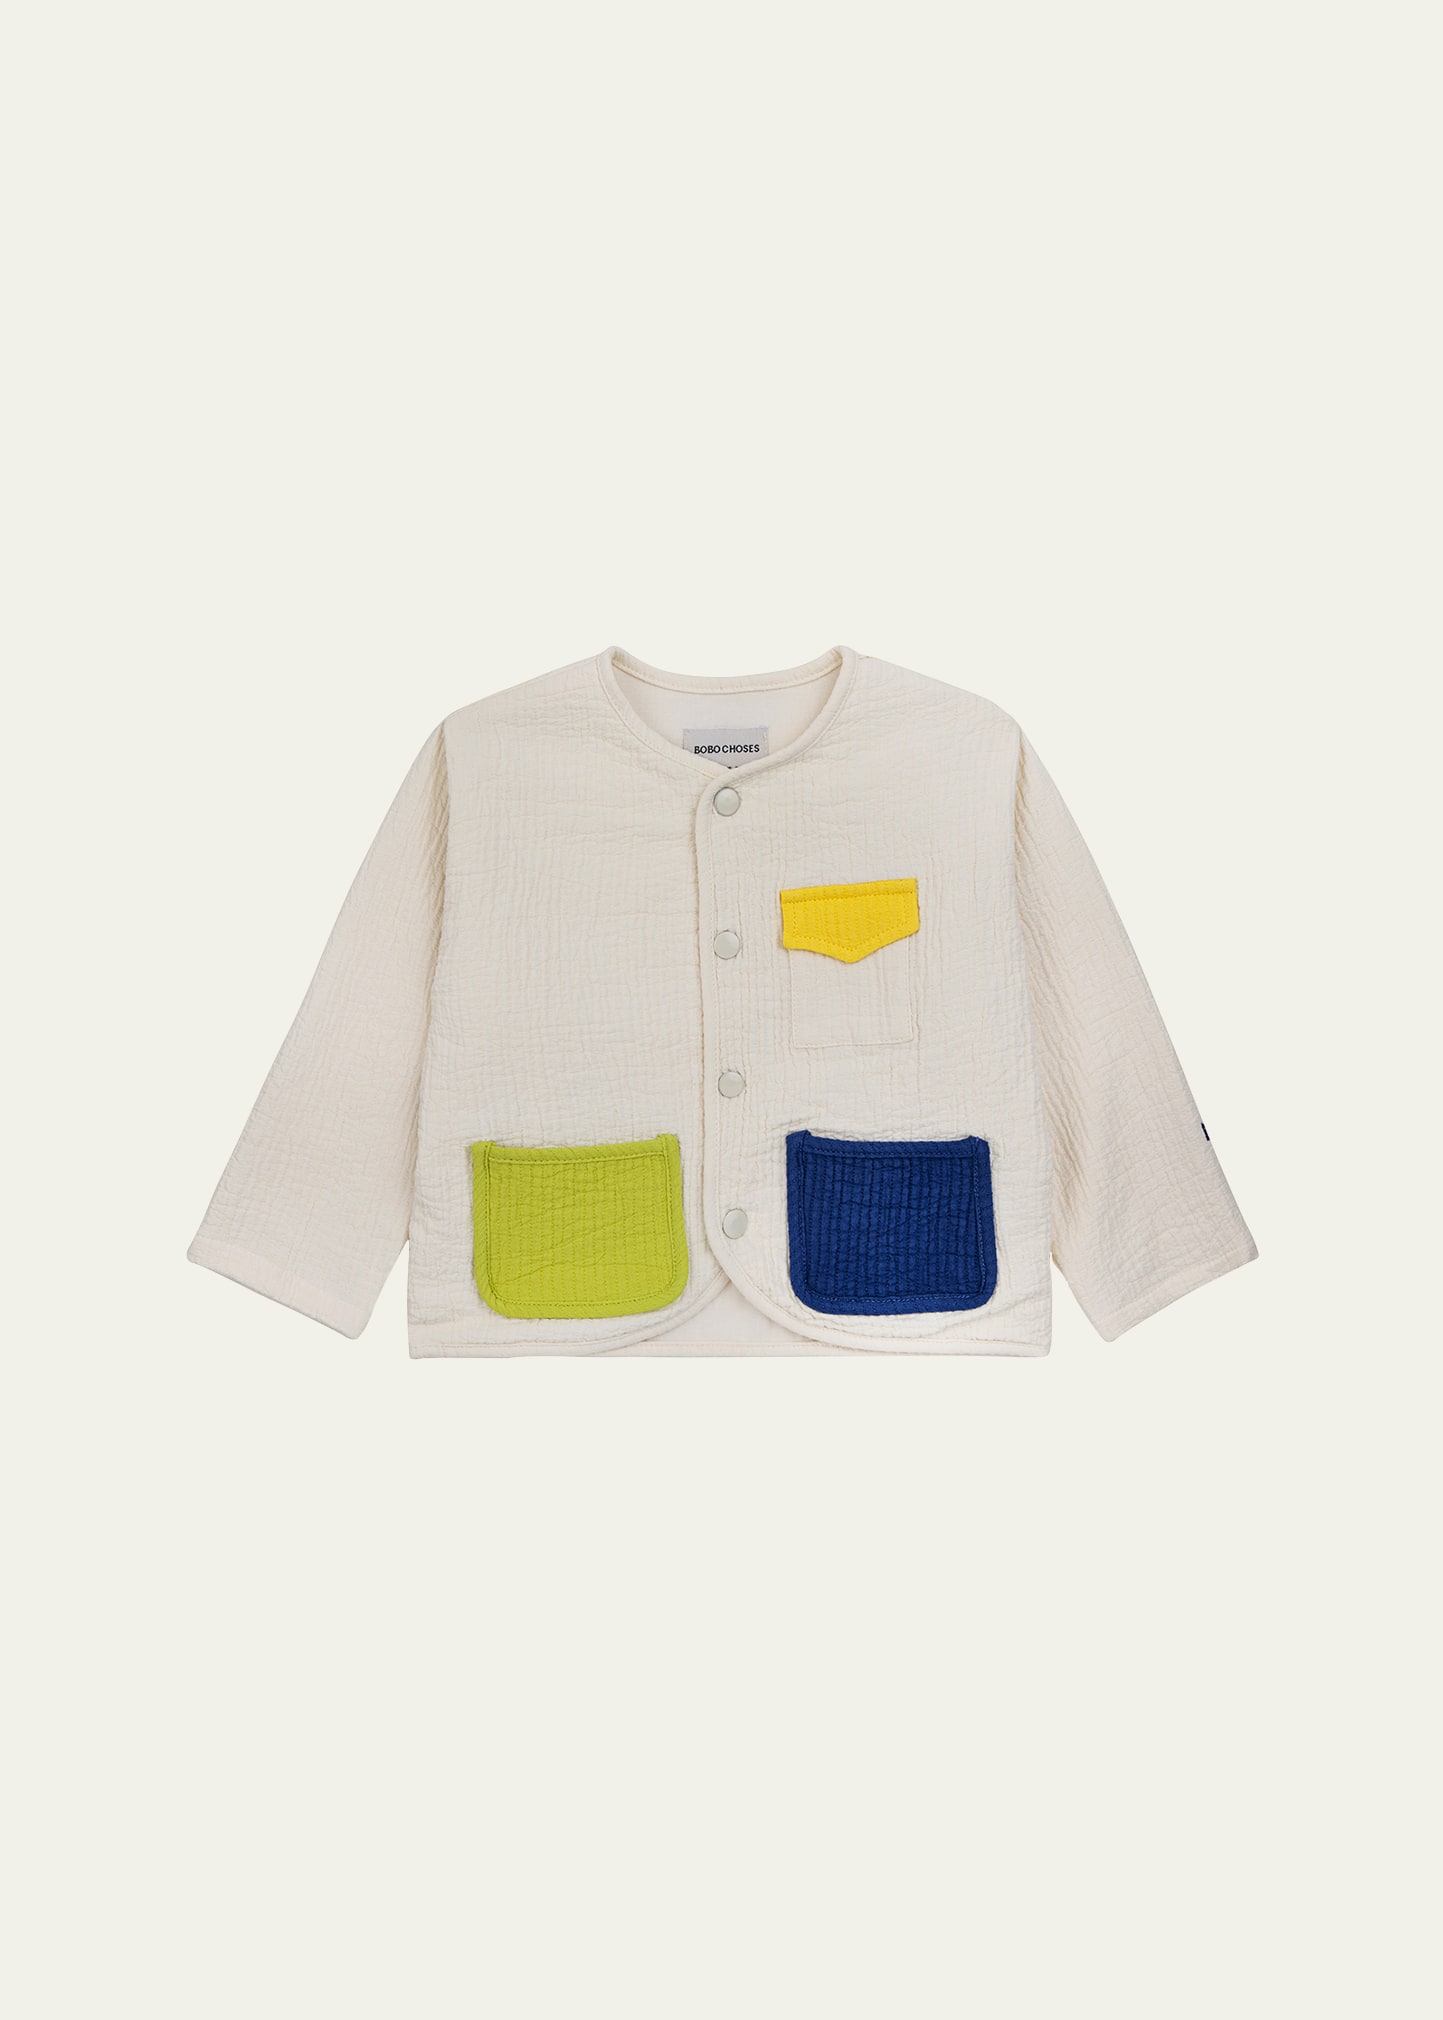 Kid's Color Block Organic Cotton Jacket, Size 9M-24M